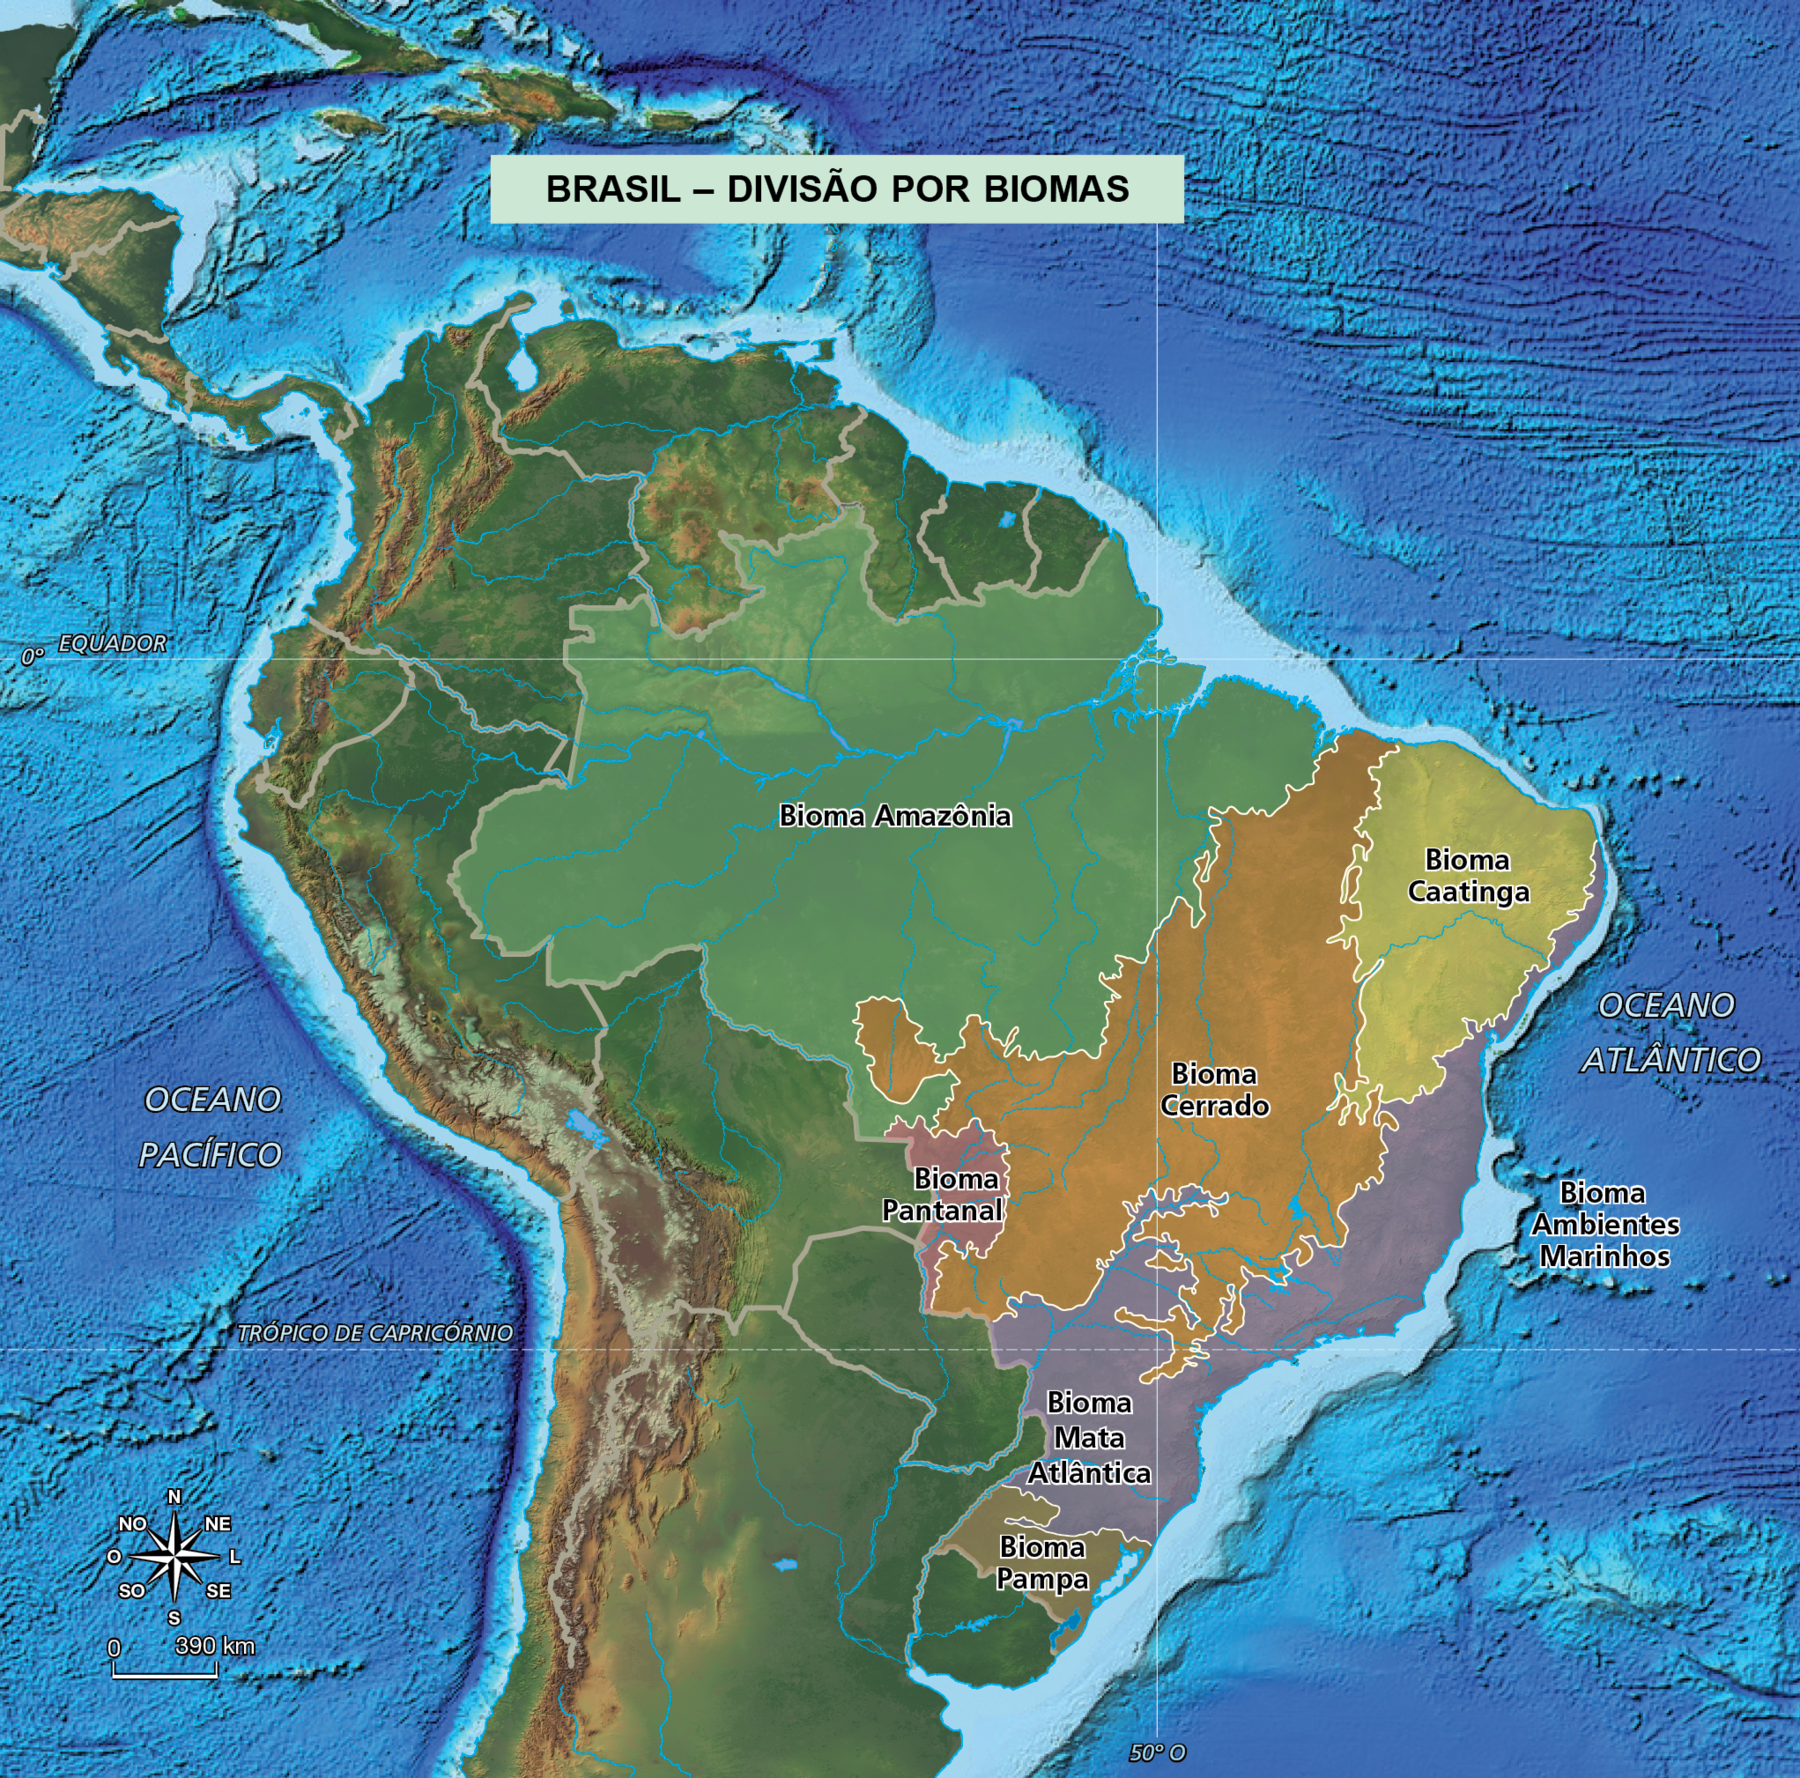 Vista do alto do mapa do Brasil destacando os biomas: Bioma Amazônica, Bioma Pantanal, Bioma Cerrado, Bioma Caatinga, Bioma Mata Atlântica, Bioma Pampa e Bioma ambientes marinhos. No canto inferior esquerdo, rosa dos ventos e escala de 0 a 390 quilômetros.